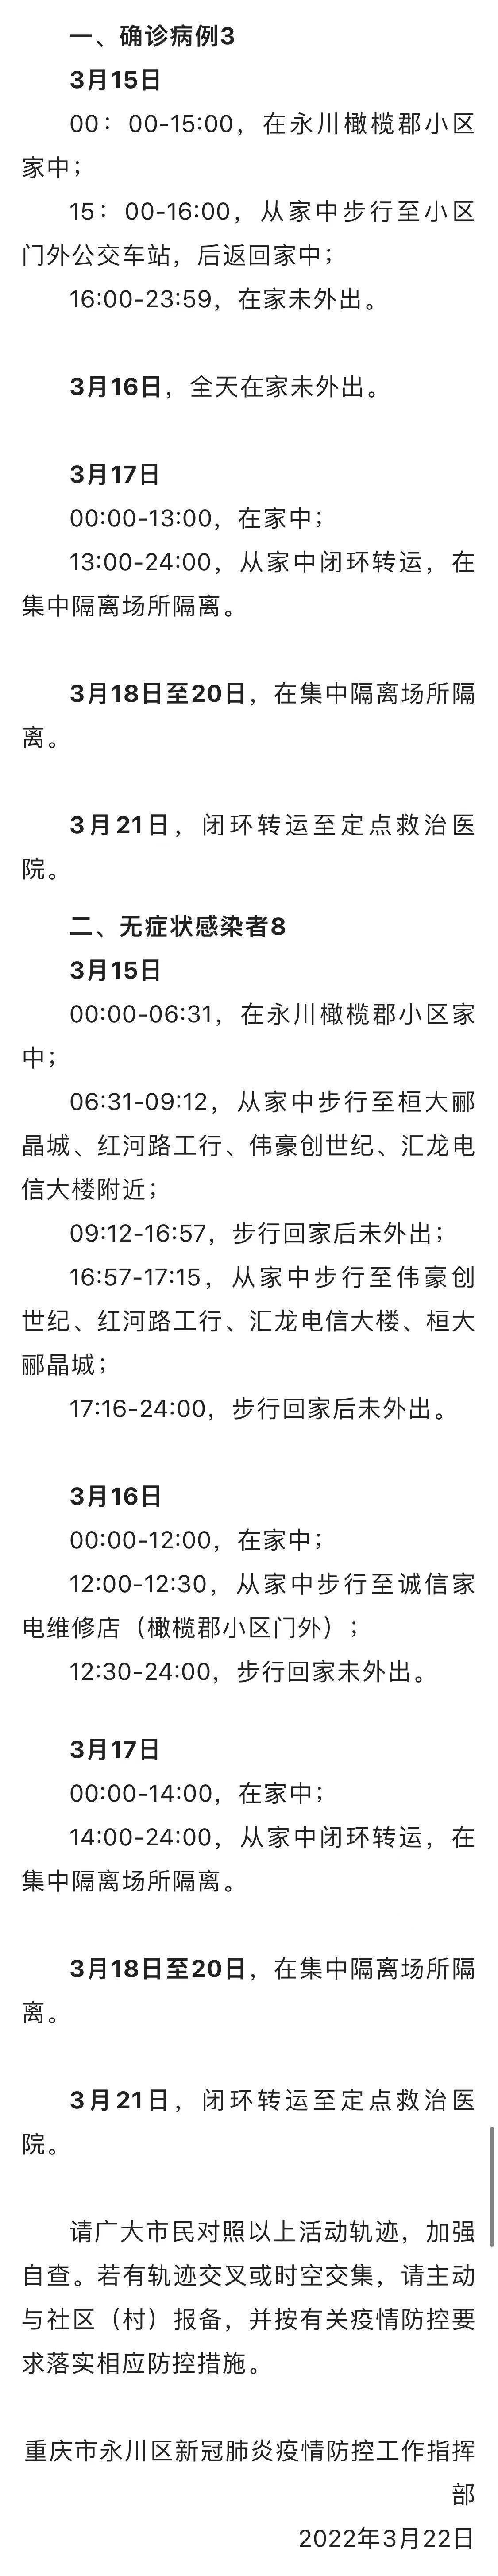 轻型|重庆市永川区公布1例确诊病例和1例无症状感染者主要活动轨迹